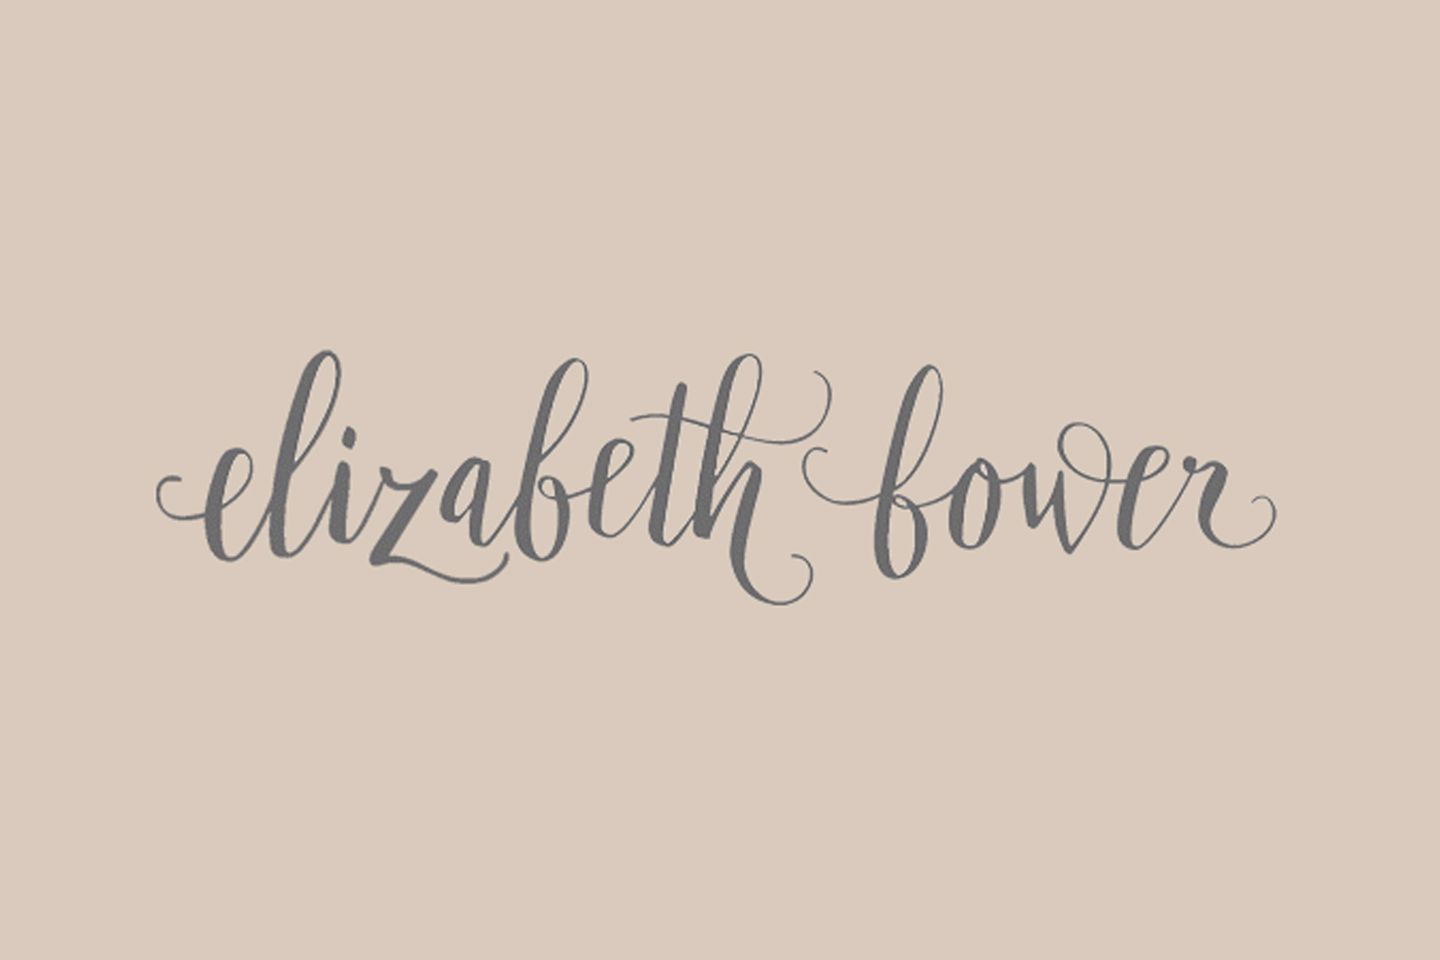 Elizabeth bower